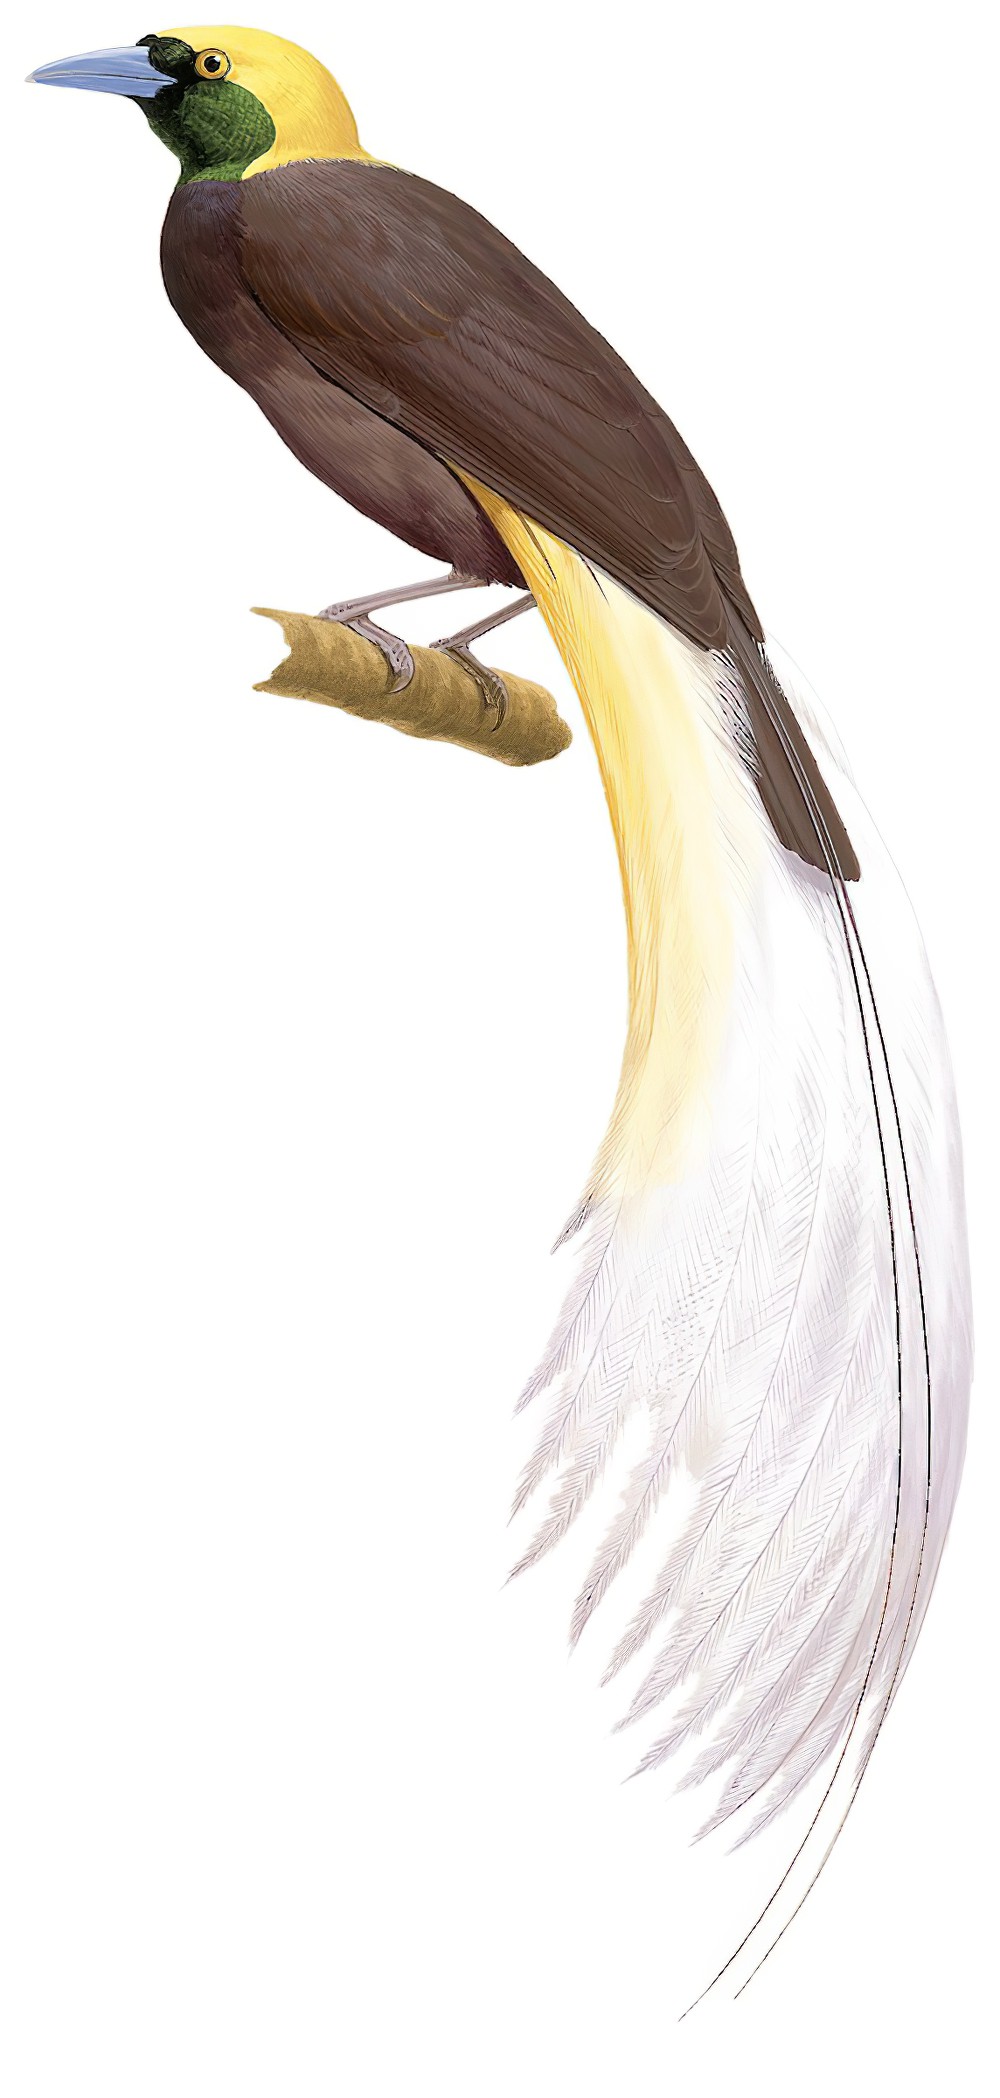 Greater Bird-of-Paradise / Paradisaea apoda